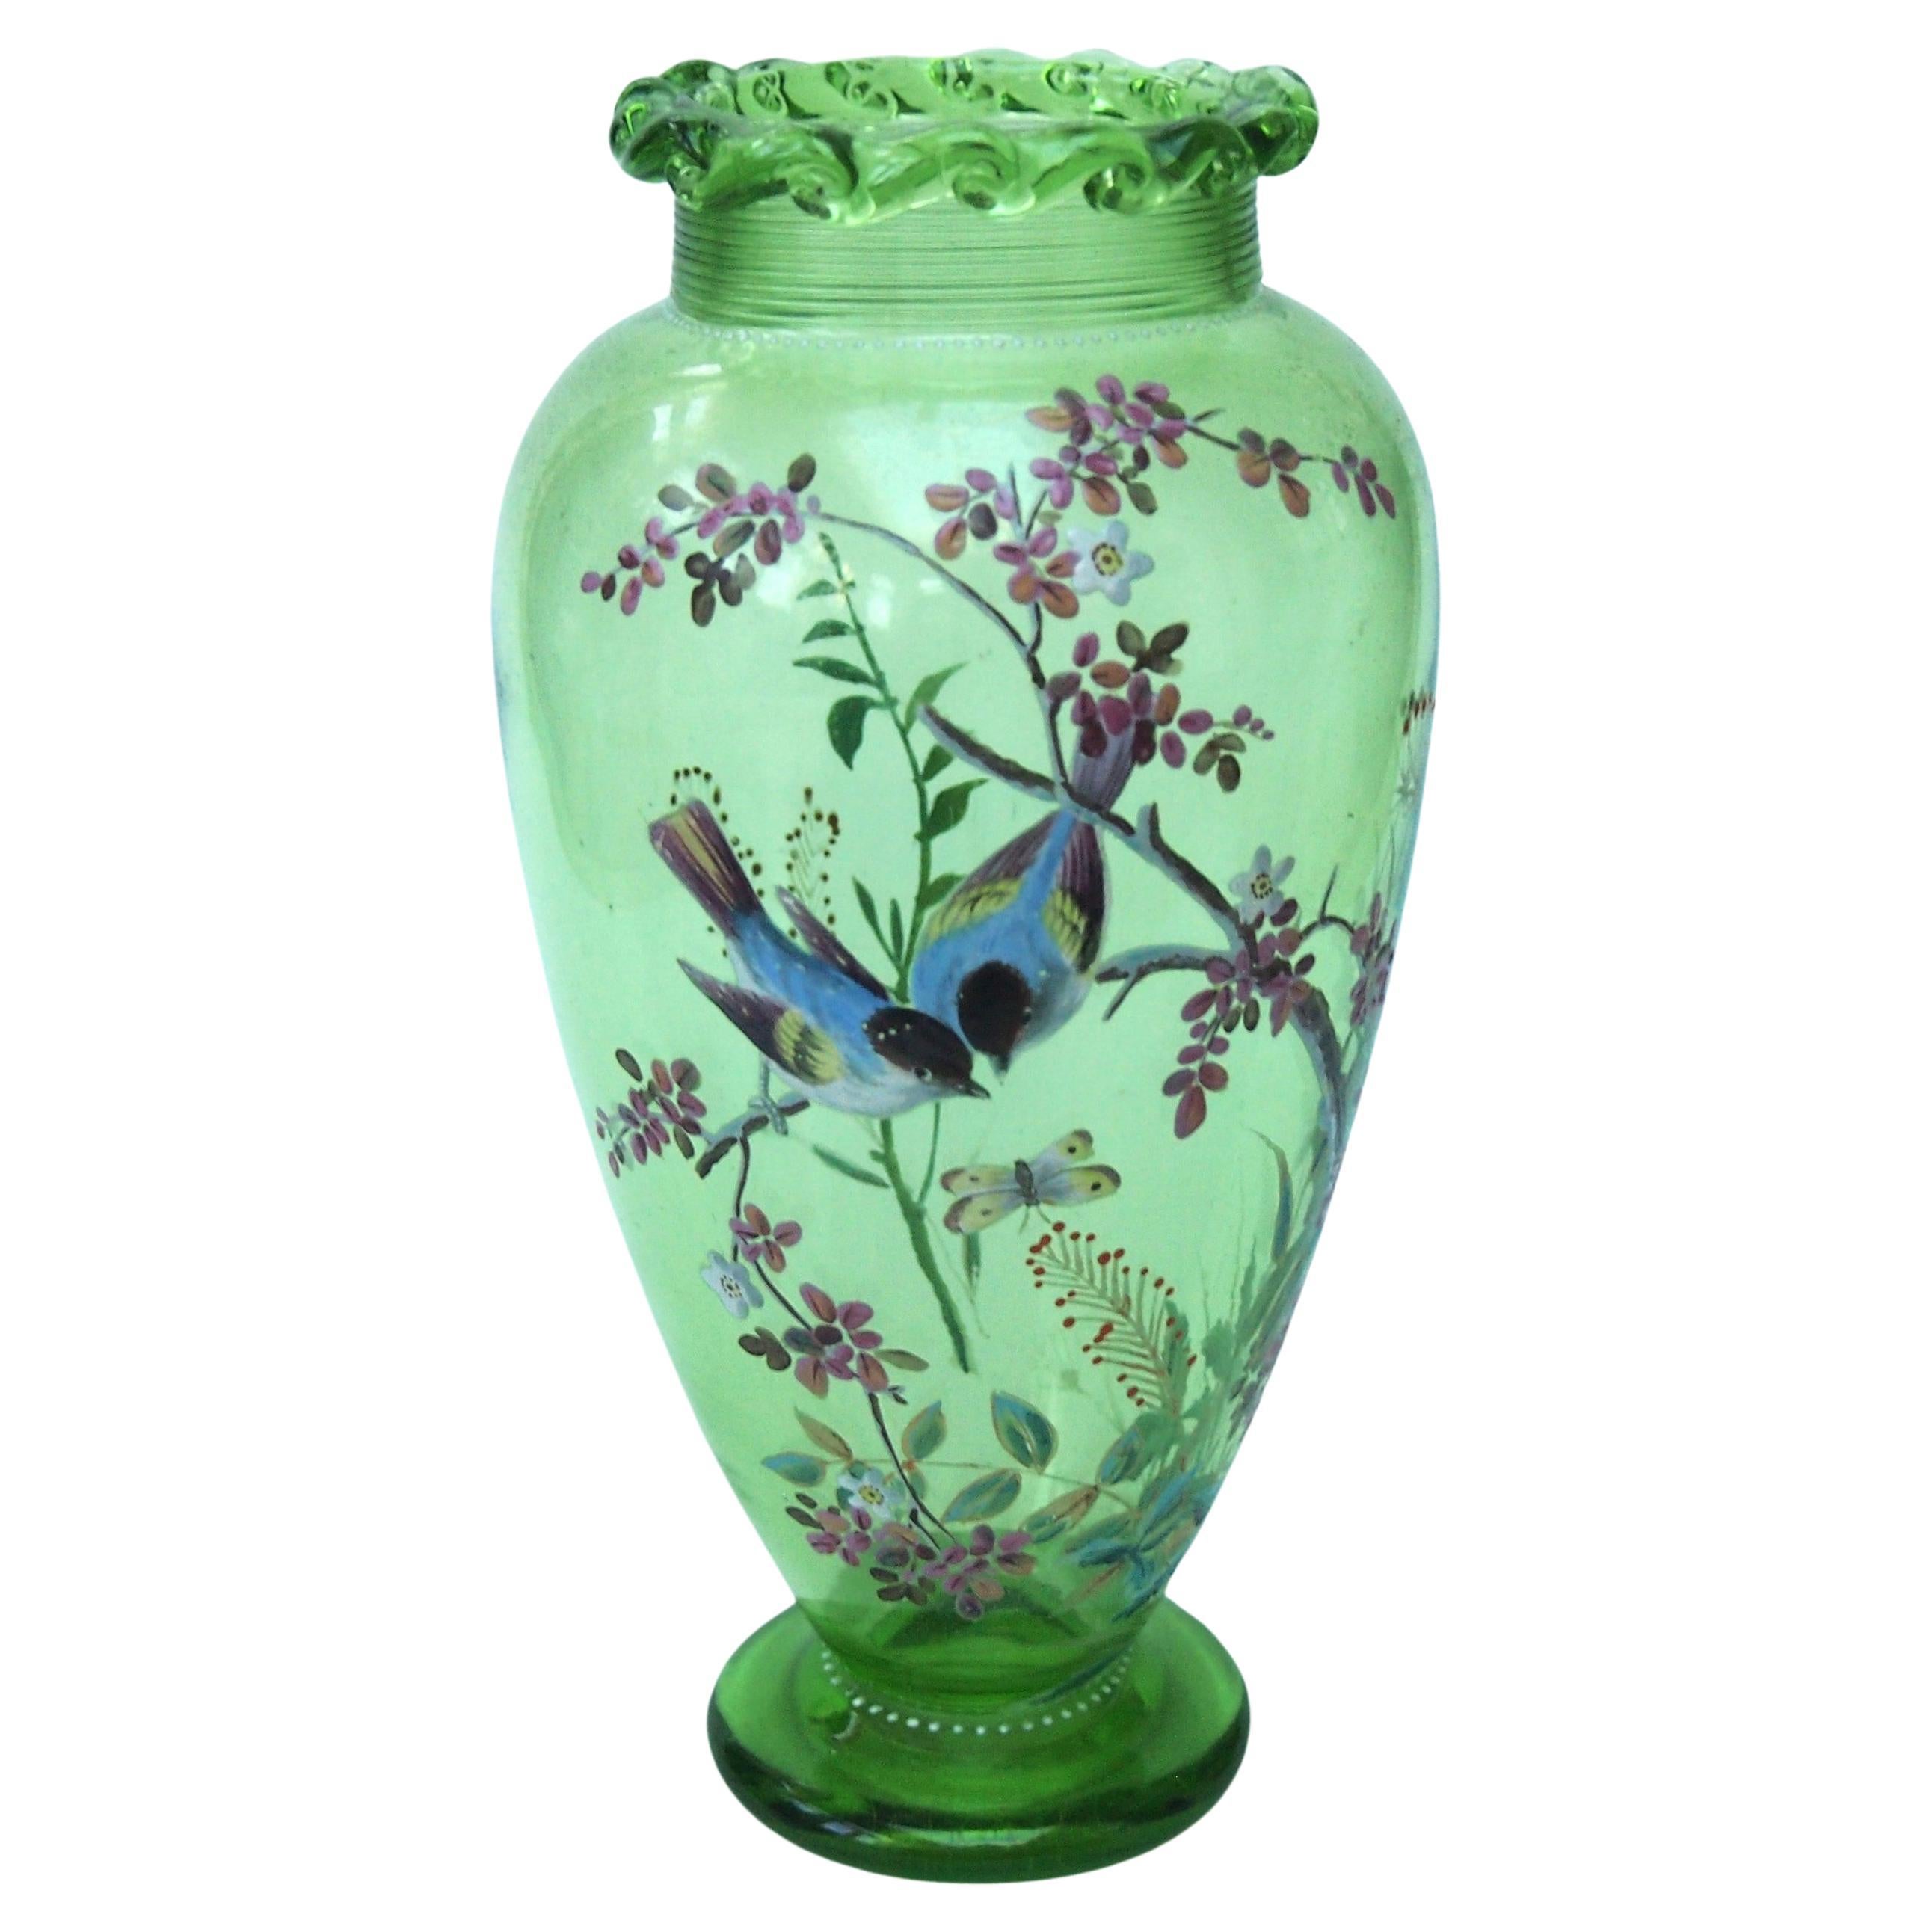 Harrach-Glasvase, dekoriert mit Vögeln in Zweigen  c1890